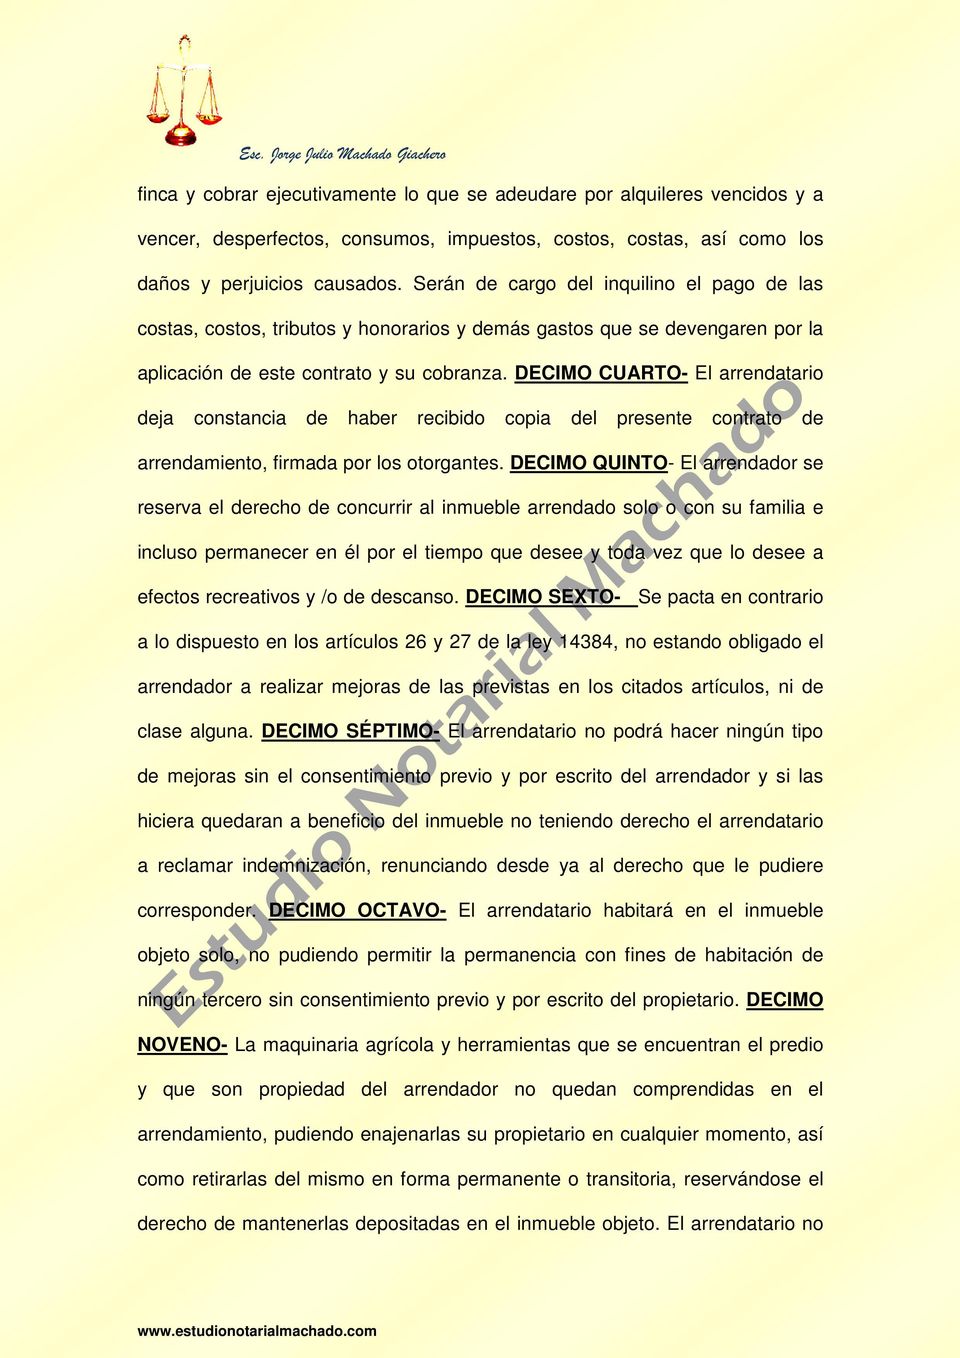 DECIMO CUARTO- El arrendatario deja constancia de haber recibido copia del presente contrato de arrendamiento, firmada por los otorgantes.